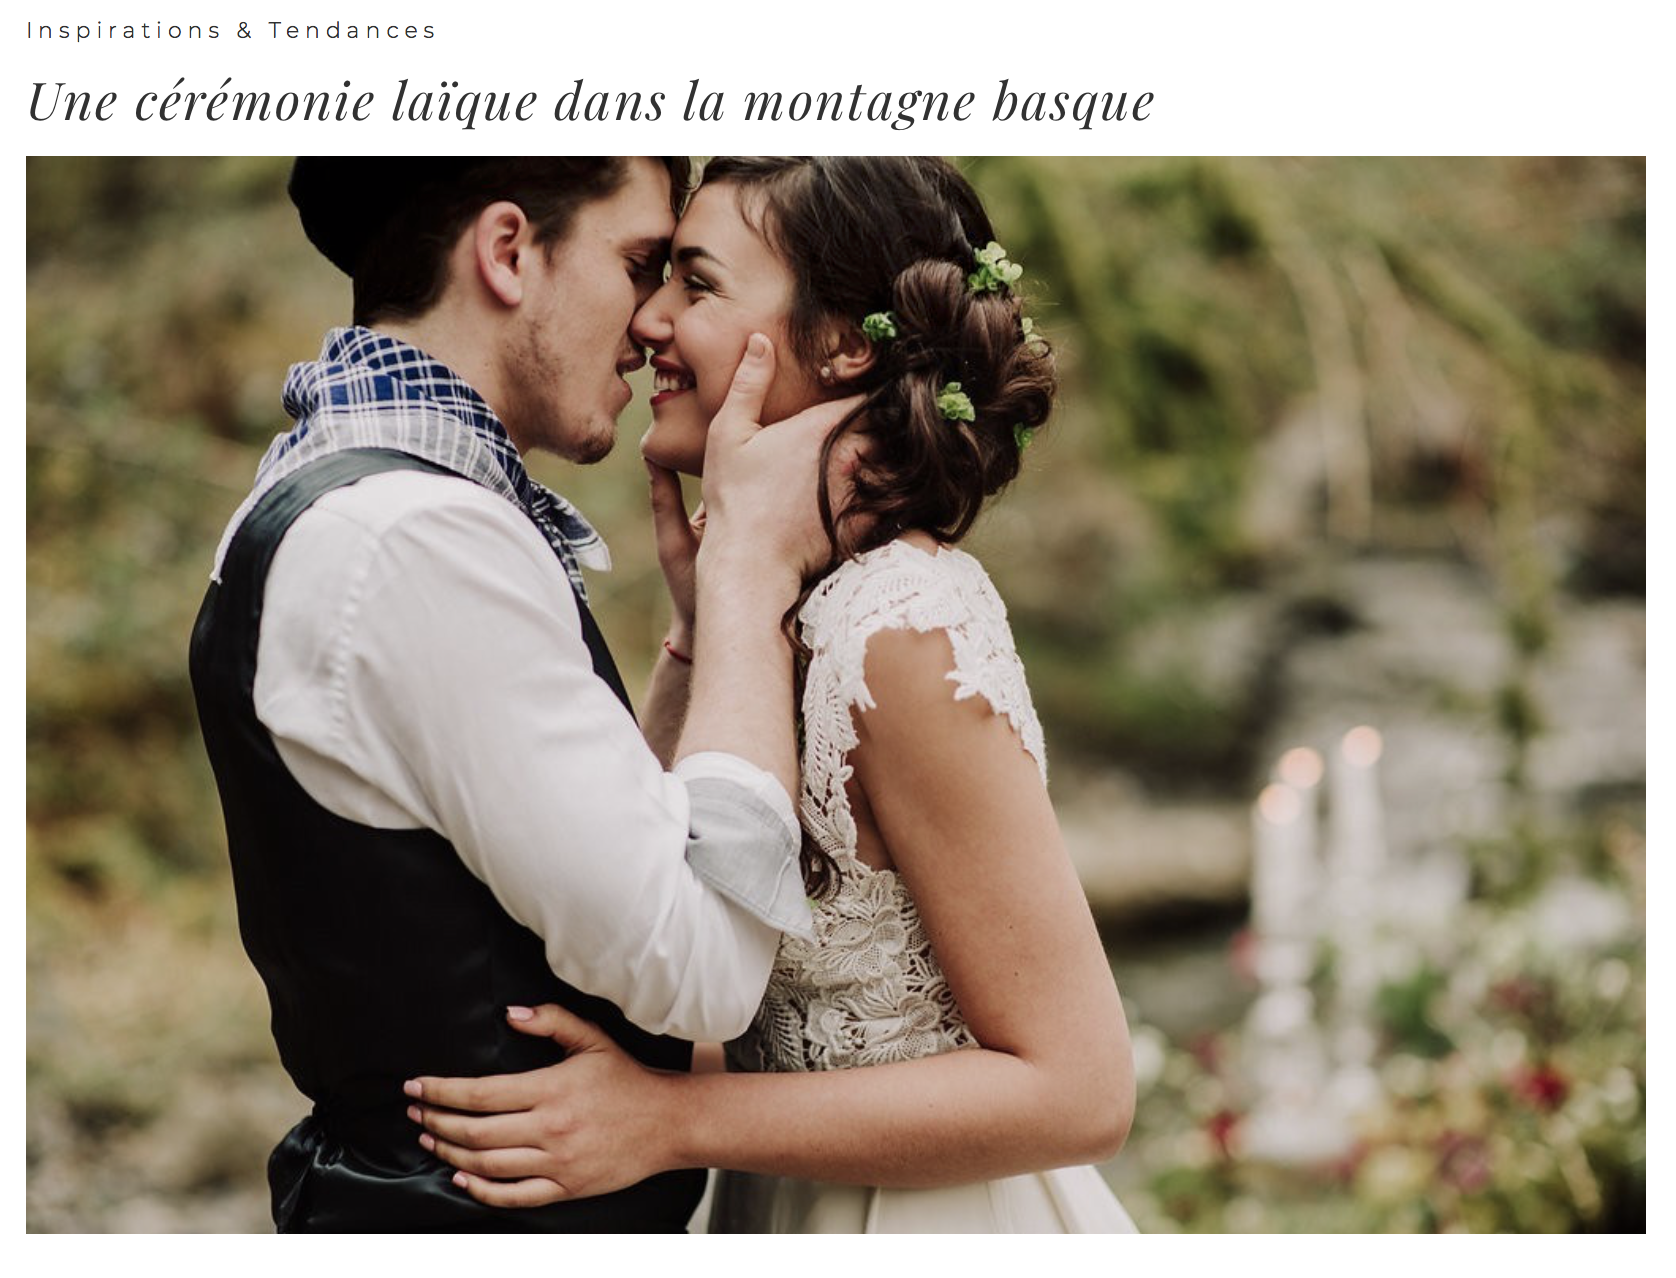 Mariage basque robe de mariée dentelle sur mesure